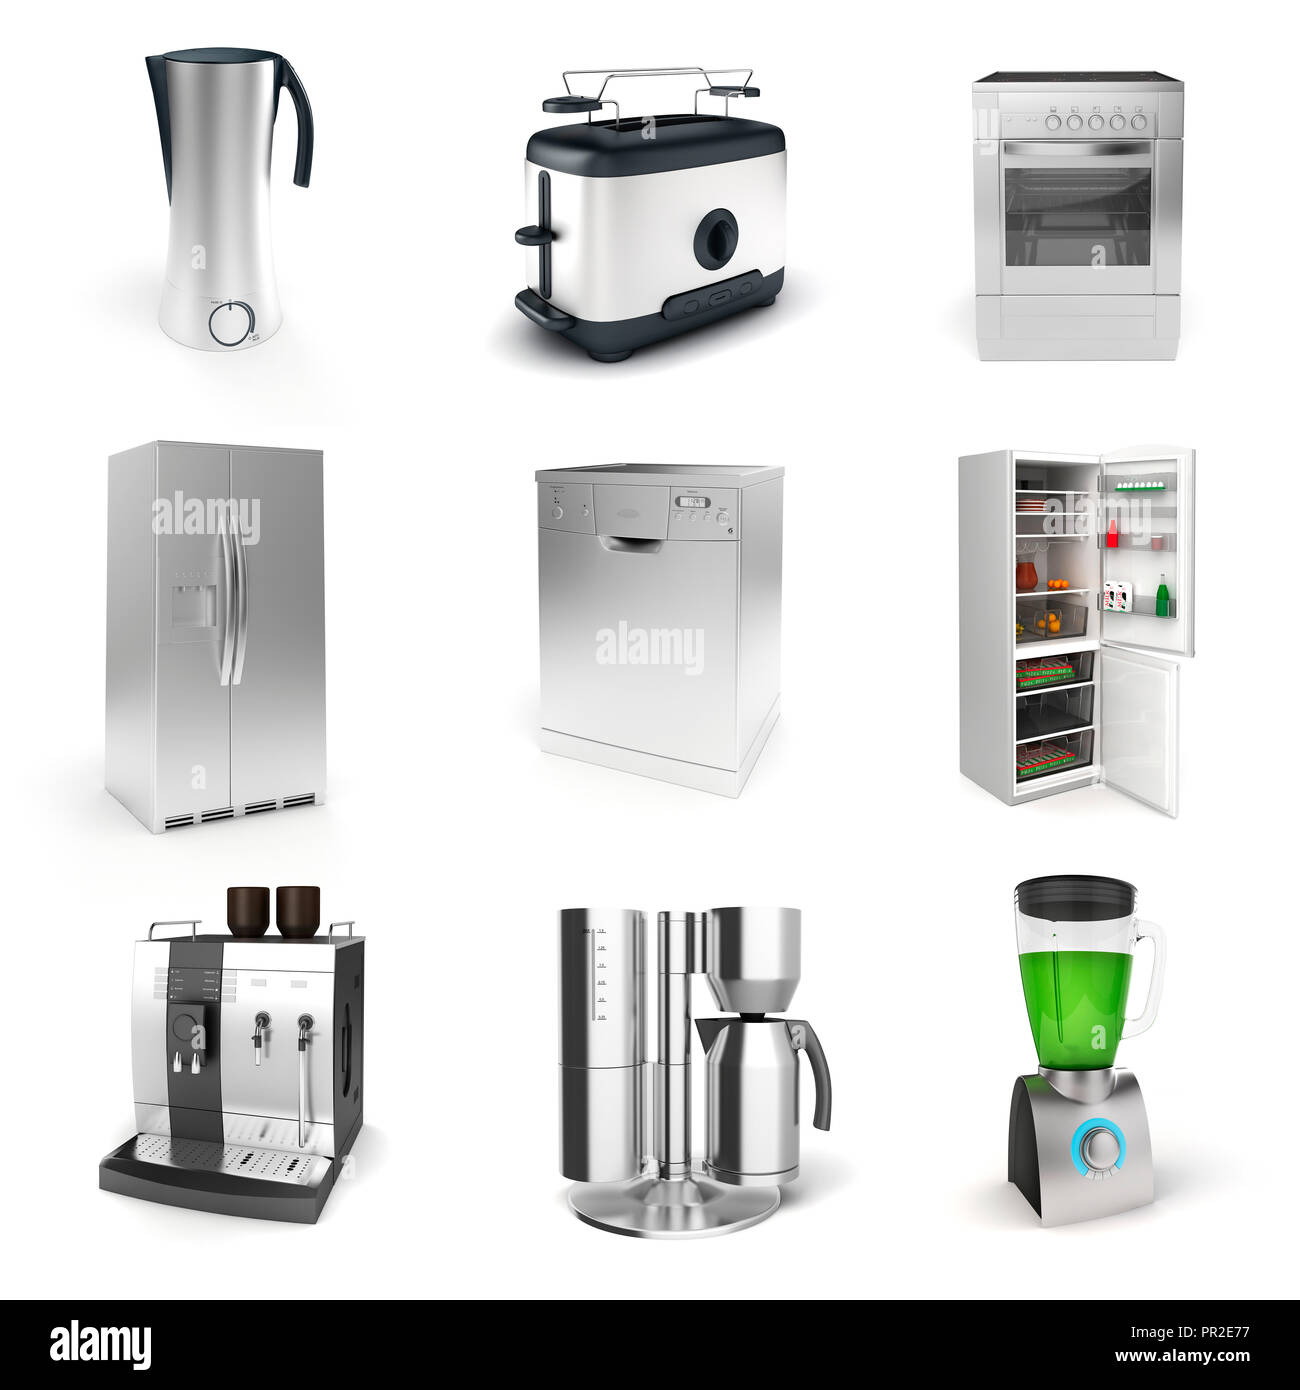 https://c8.alamy.com/comp/PR2E77/3d-render-of-household-appliances-on-white-background-PR2E77.jpg